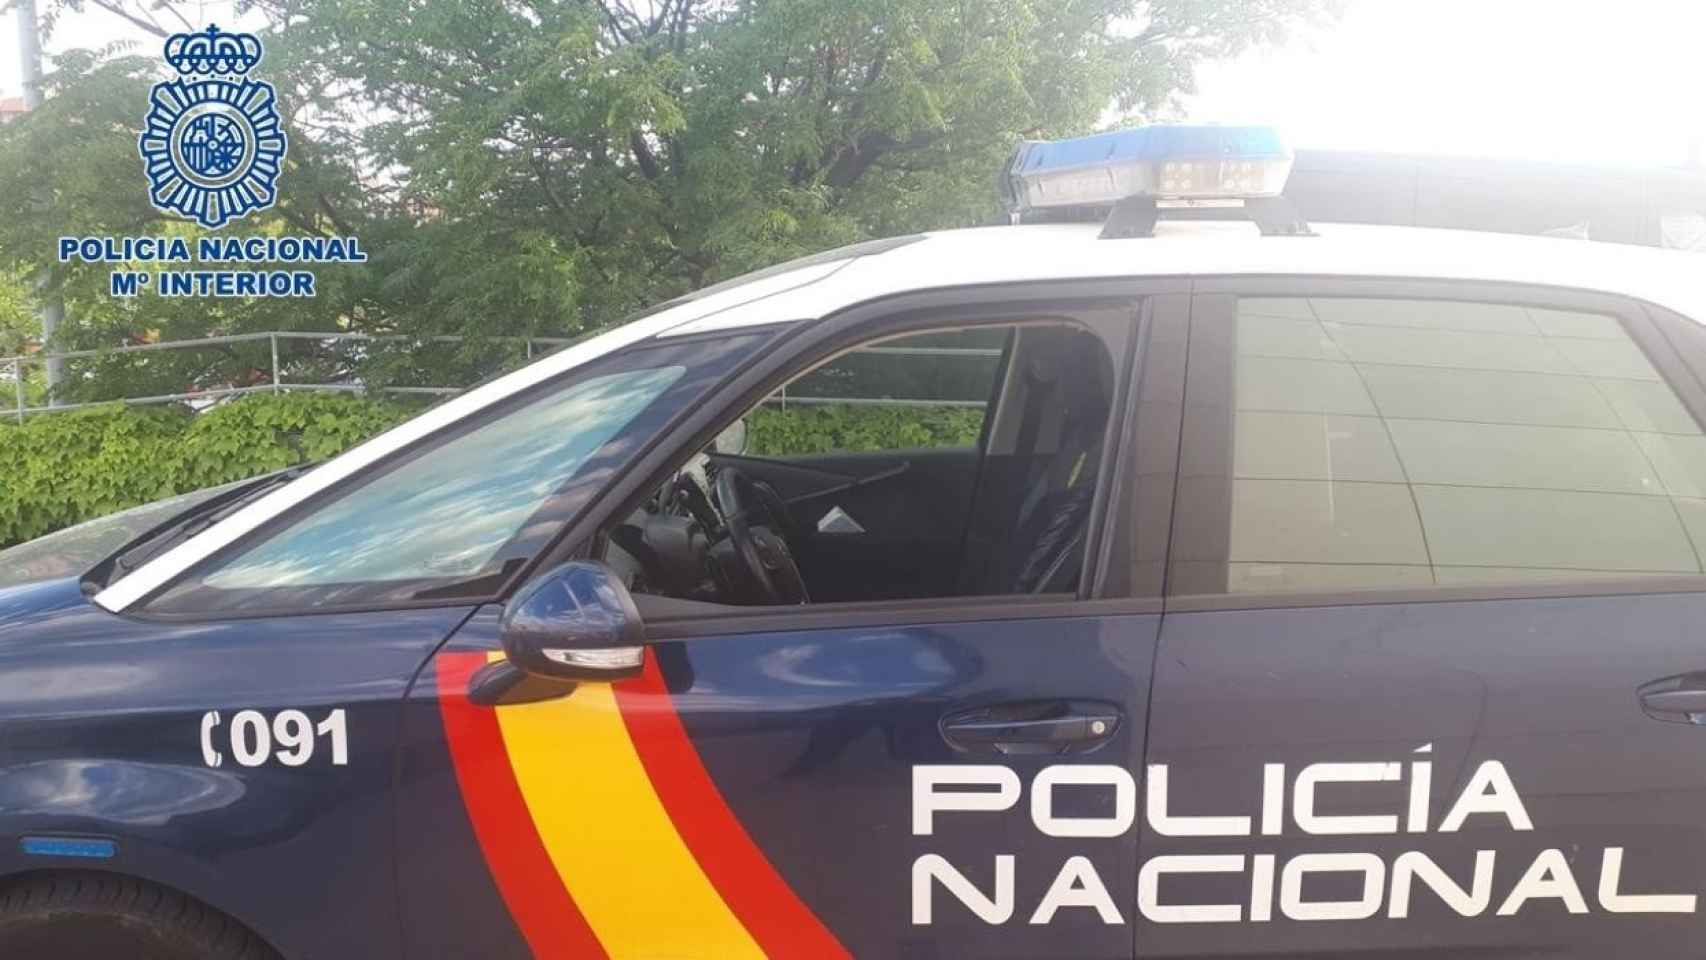 Vehículo de la Policía Nacional en el que trasladaron al fugitivo / EP